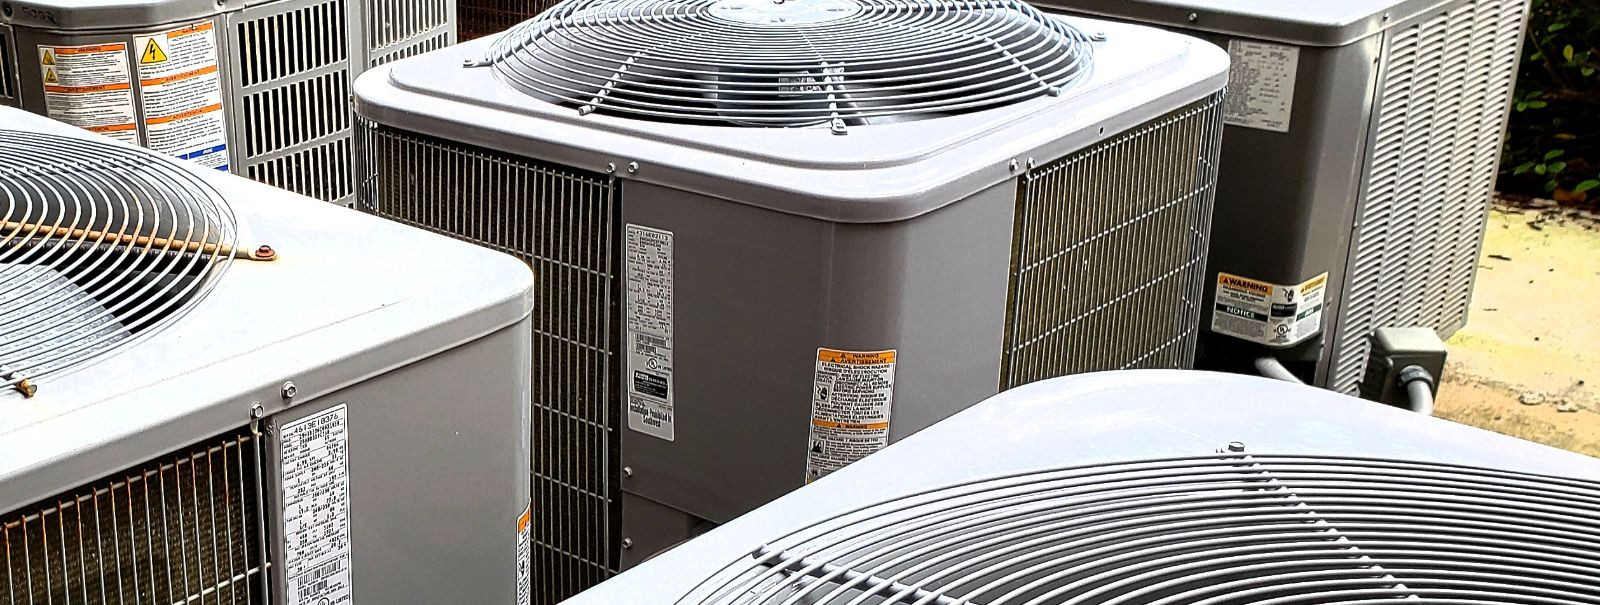 Tõhus ventilatsioon on oluline tervisliku, mugava ja energiatõhusa ...